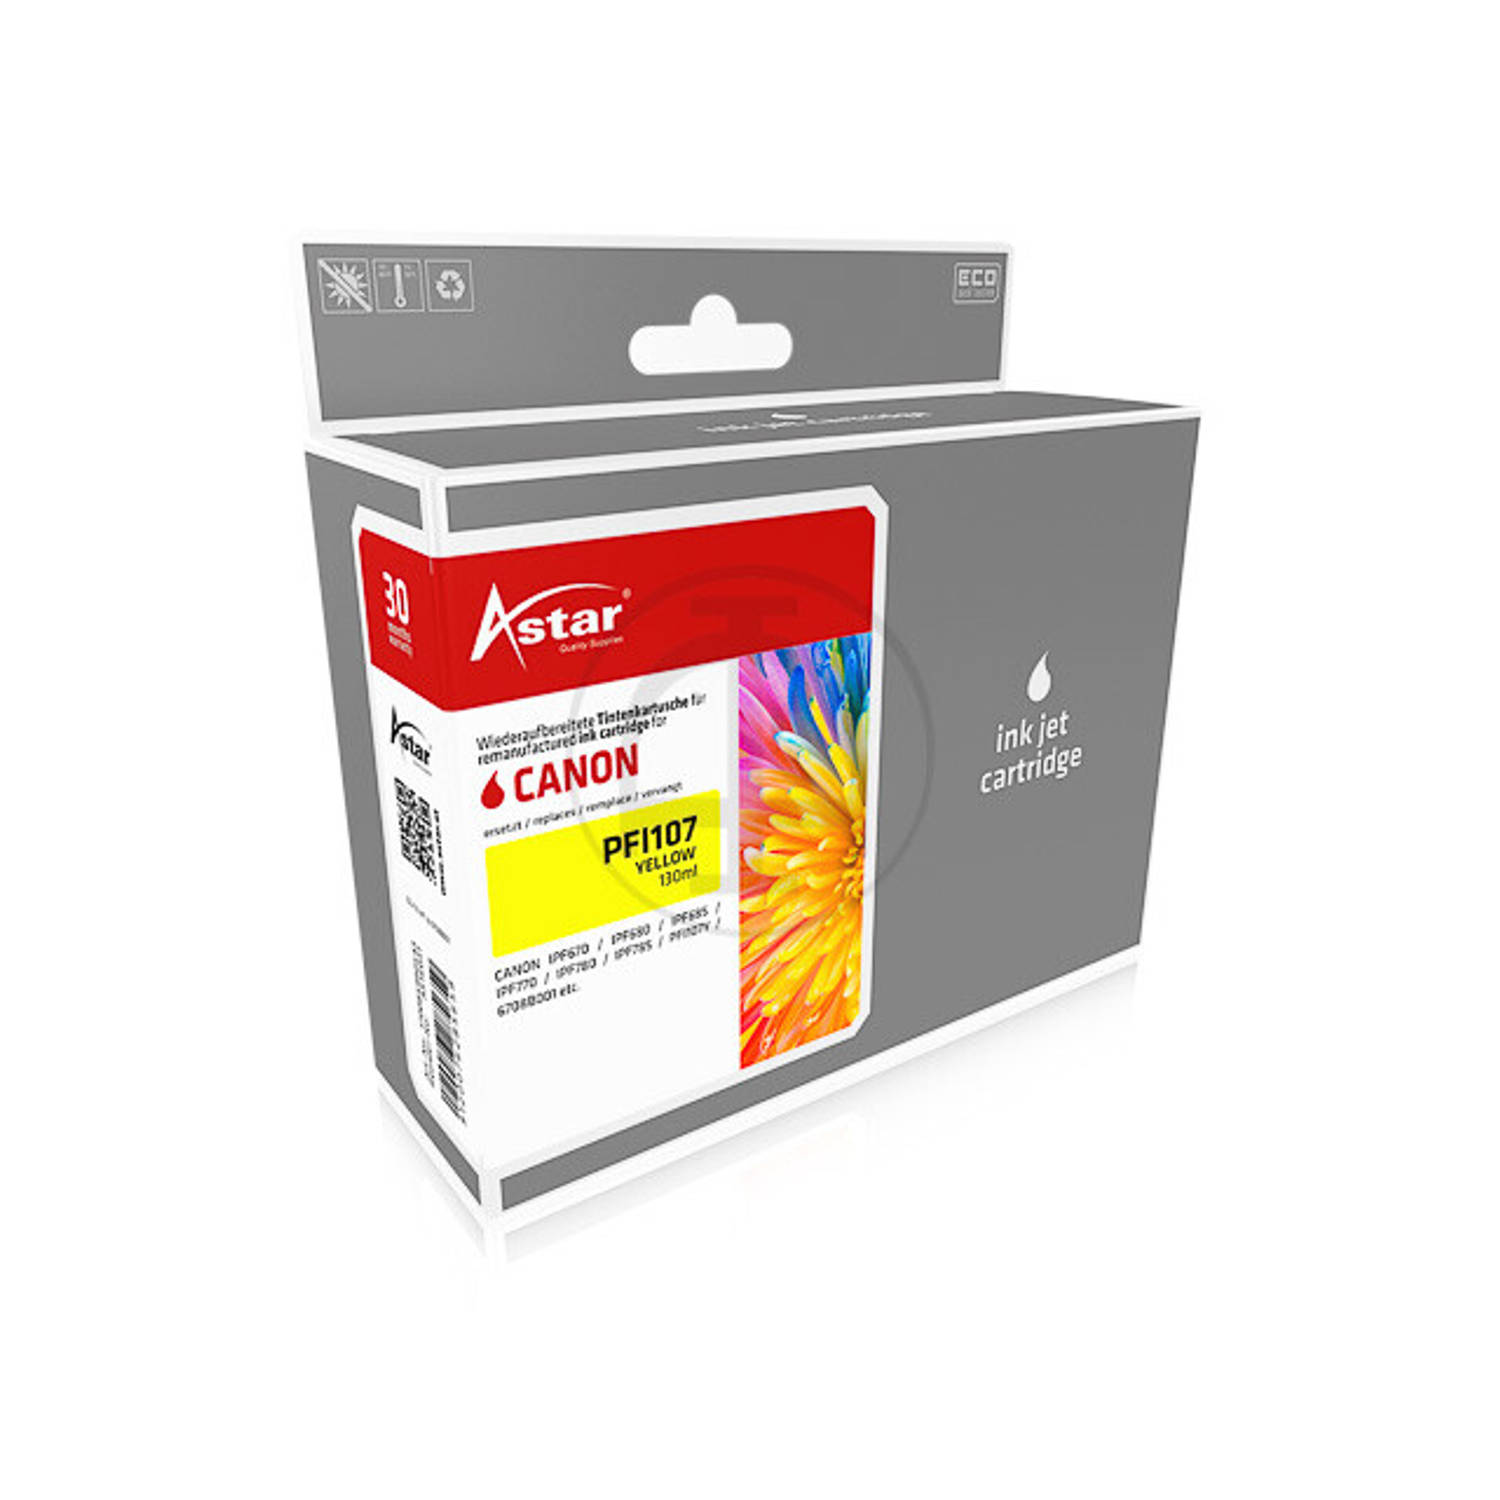 Astar AS16031 130ml Geel inktcartridge